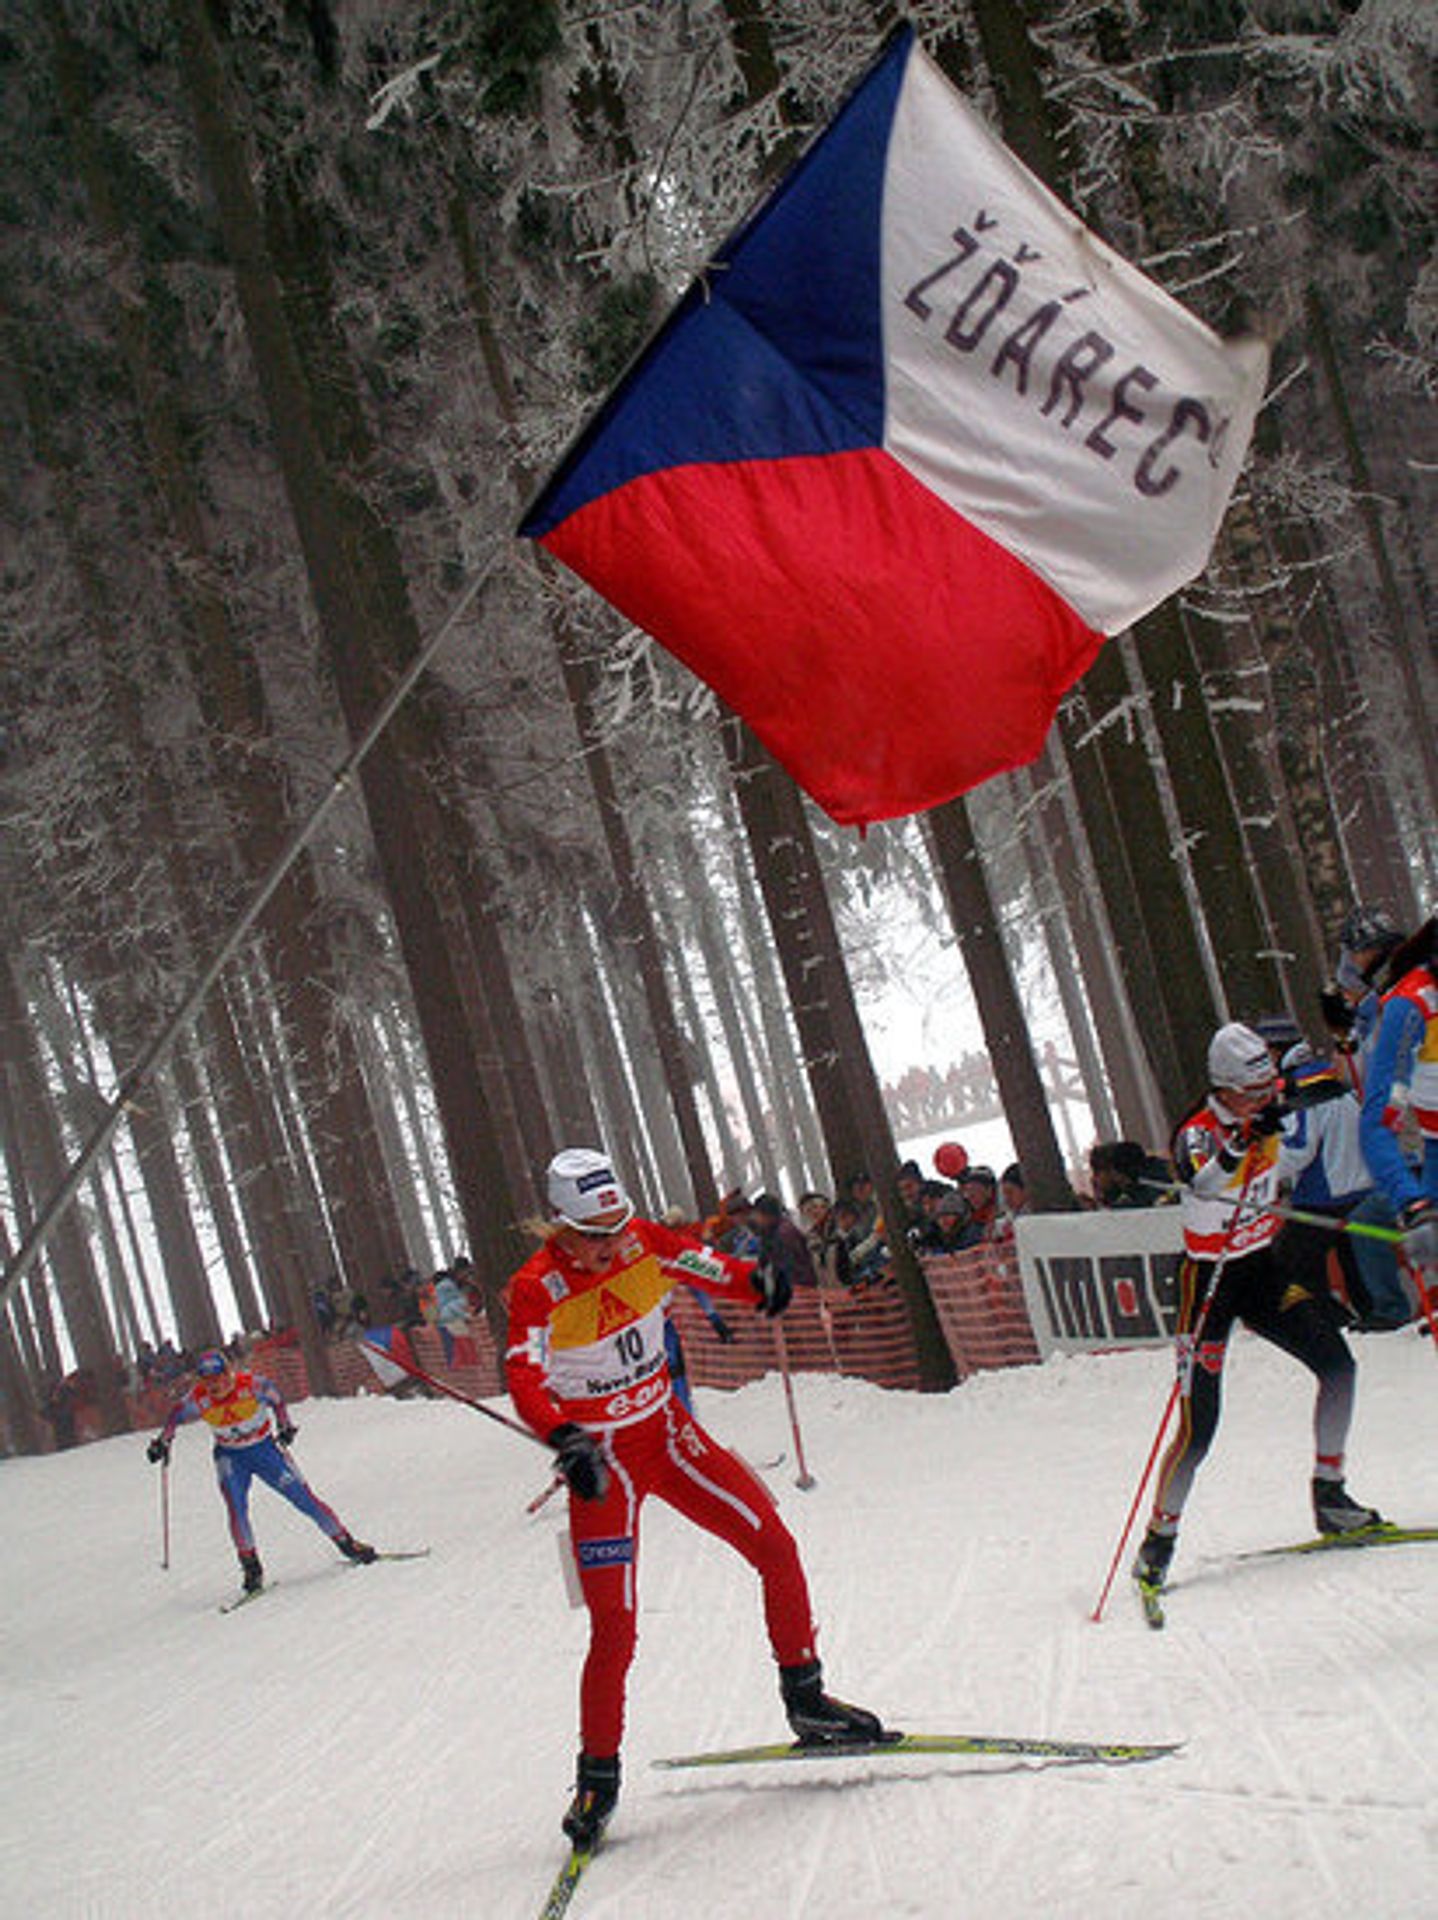 Tour de Ski v Novém Městě na Moravě - Bauer zvítězil v Novém Městě i dnes a vede Tour de Ski (3/12)